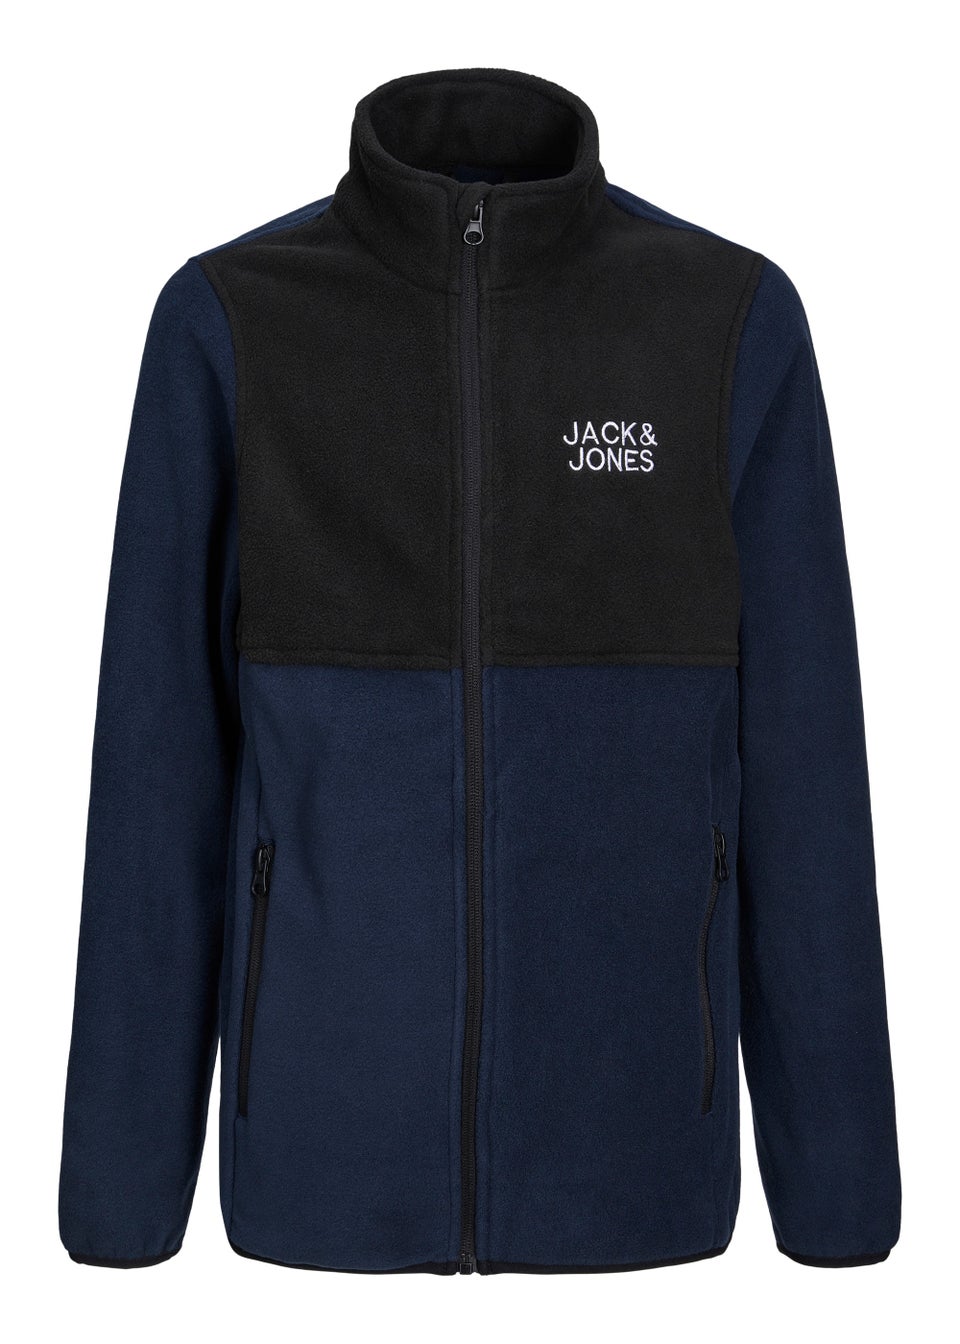 Jack & Jones Junior Navy Fleece Jacket (6-16yrs)